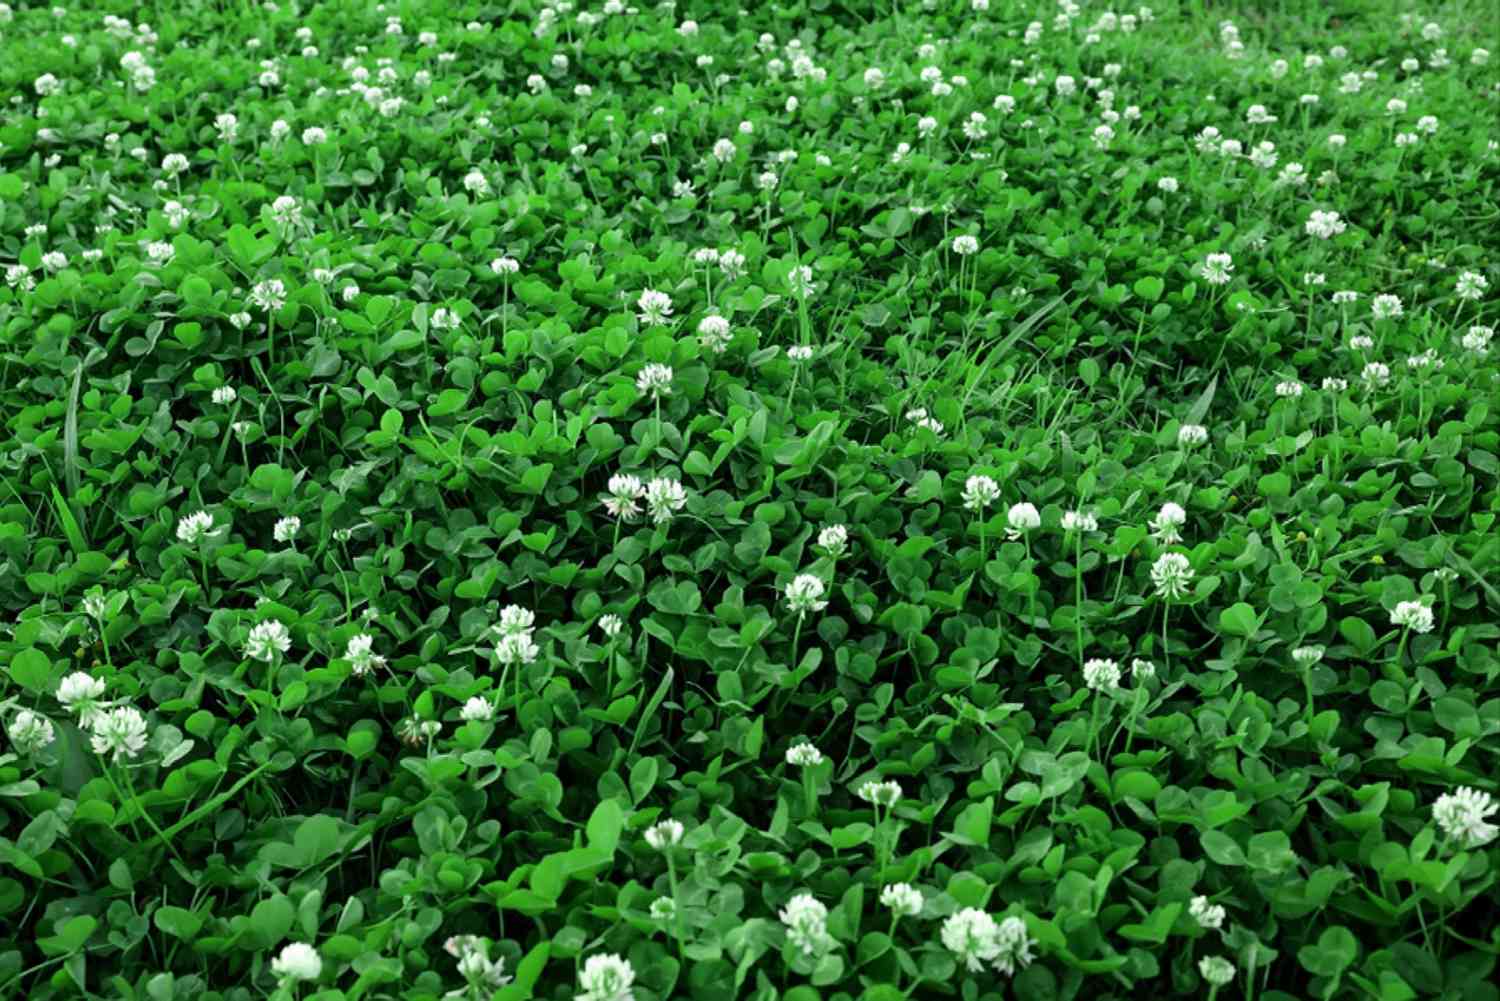 Weißkleepflanzen als Bodendecker mit kleinen weißen Blüten an dünnen Stängeln